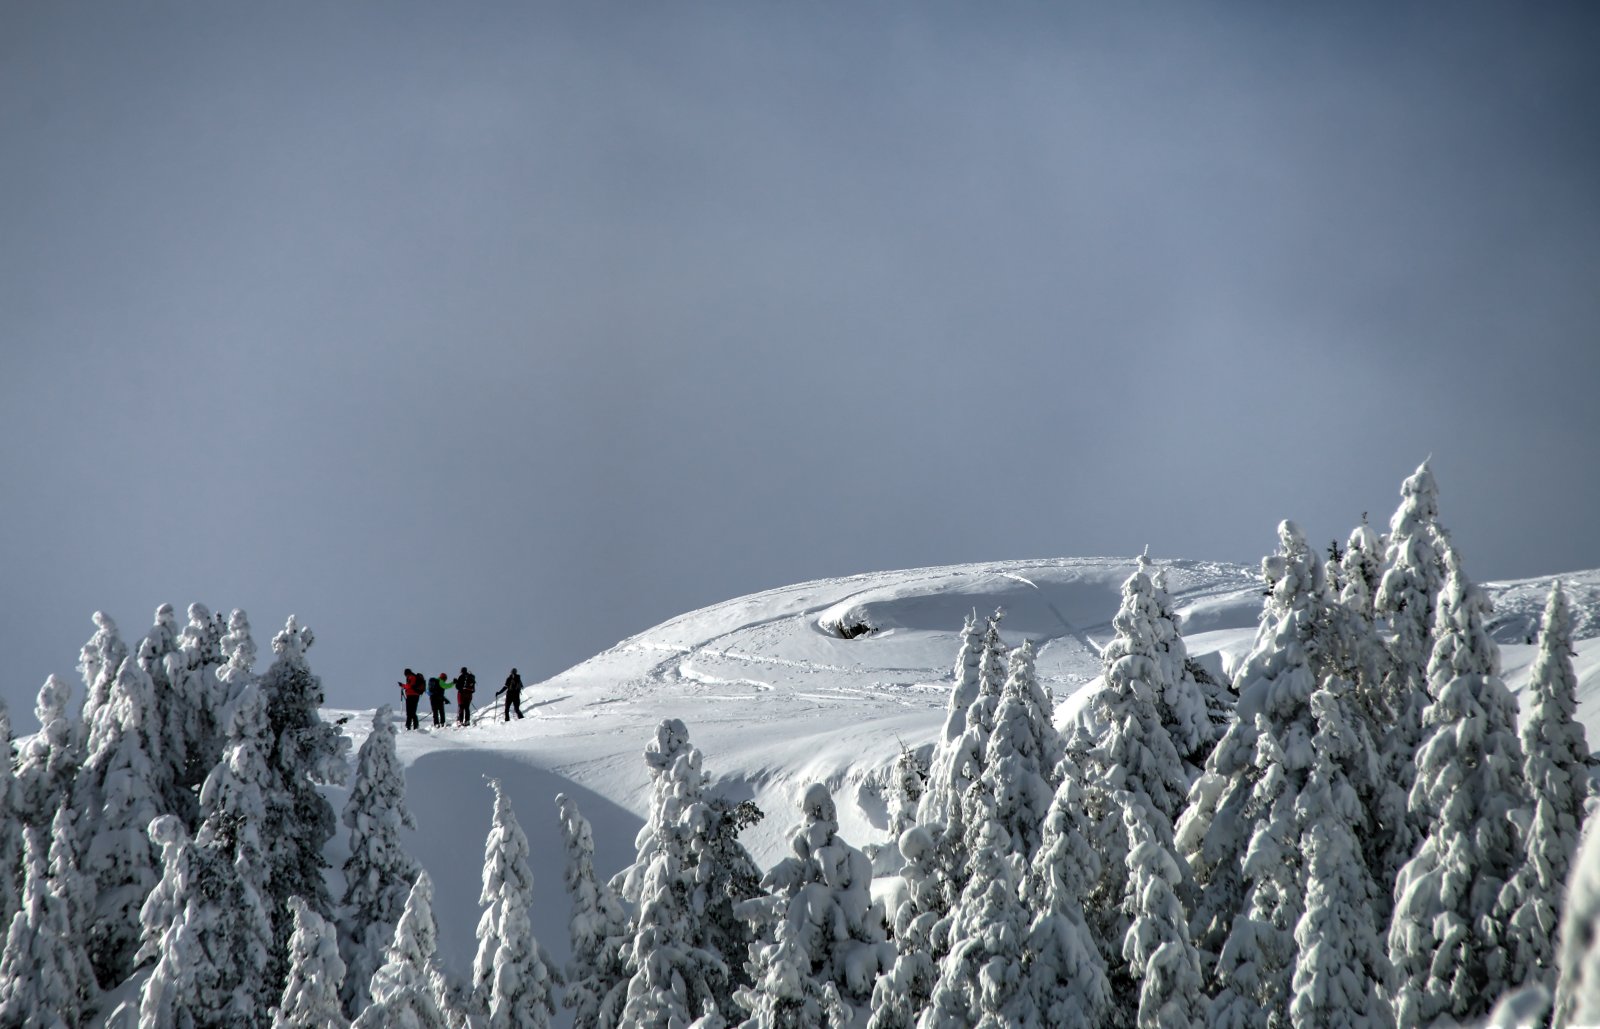 Téli idill Zillertalban kedden, itt 100-150 cm hó esett - Fotó: Stánicz Balázs (Stani)